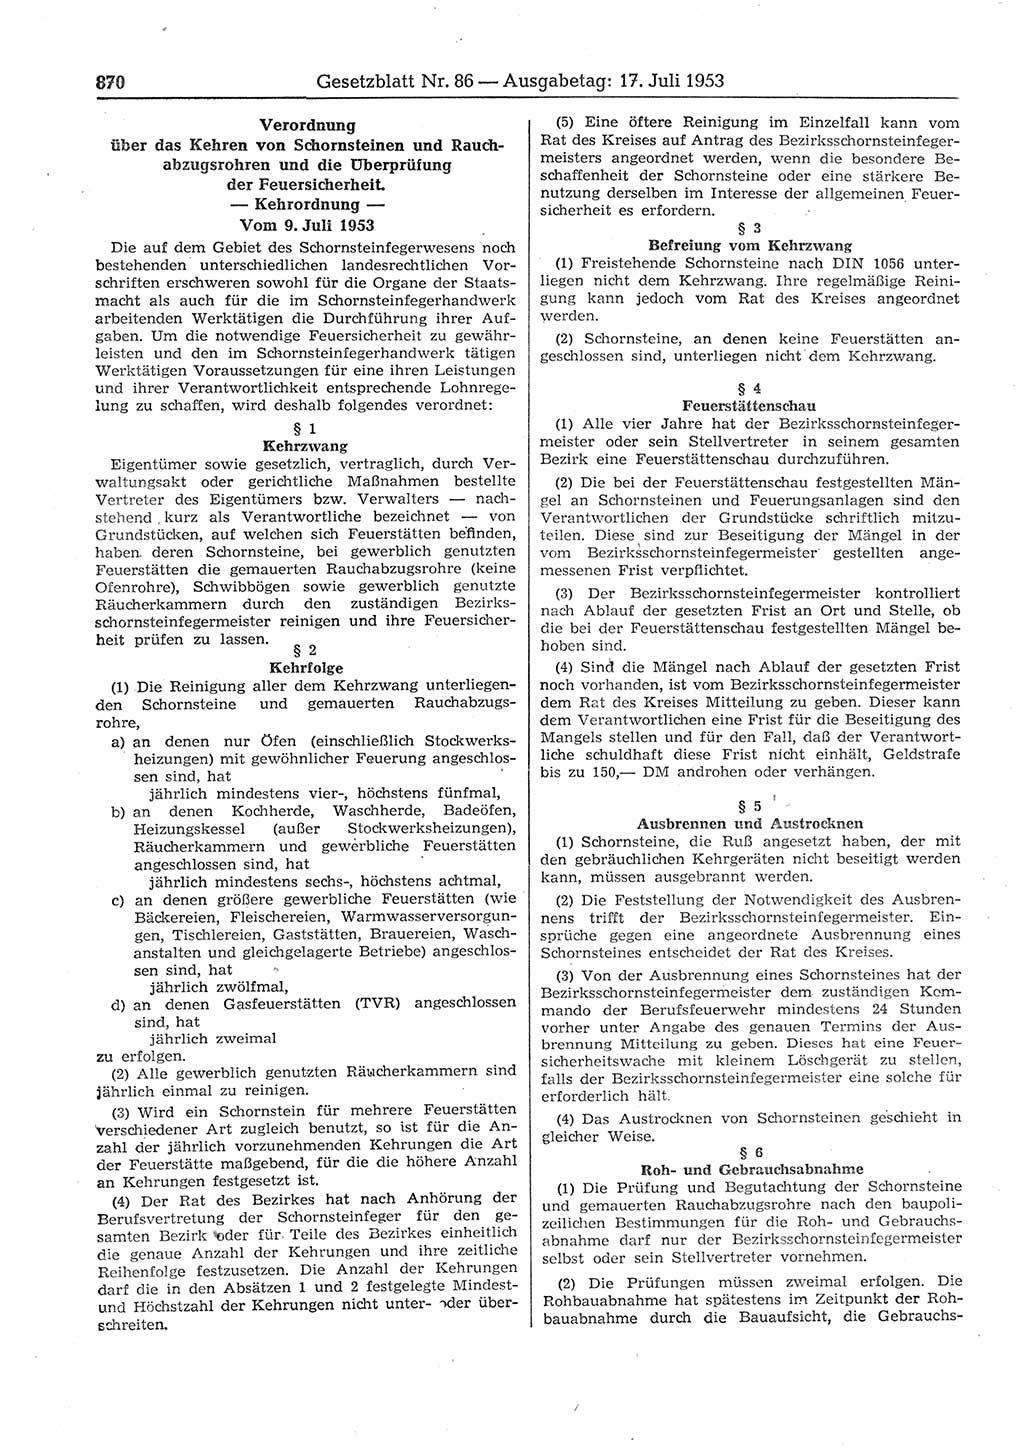 Gesetzblatt (GBl.) der Deutschen Demokratischen Republik (DDR) 1953, Seite 870 (GBl. DDR 1953, S. 870)